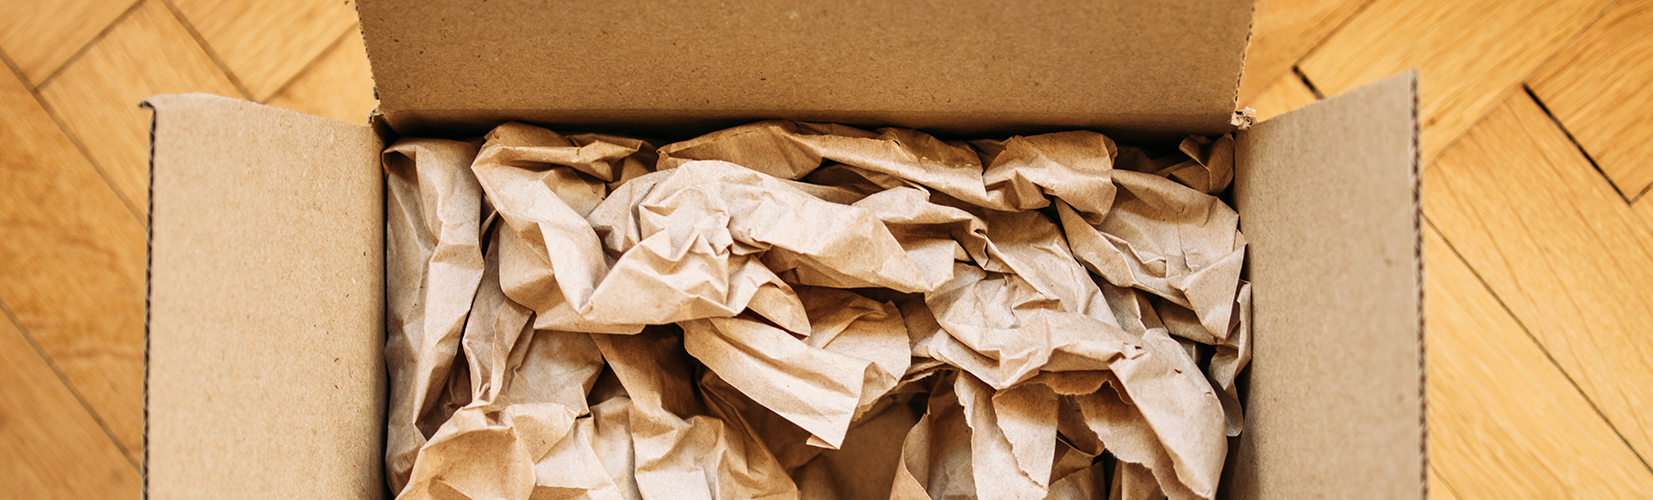 Protezione in carta all'interno di una scatola da imballaggio in cartone marrone